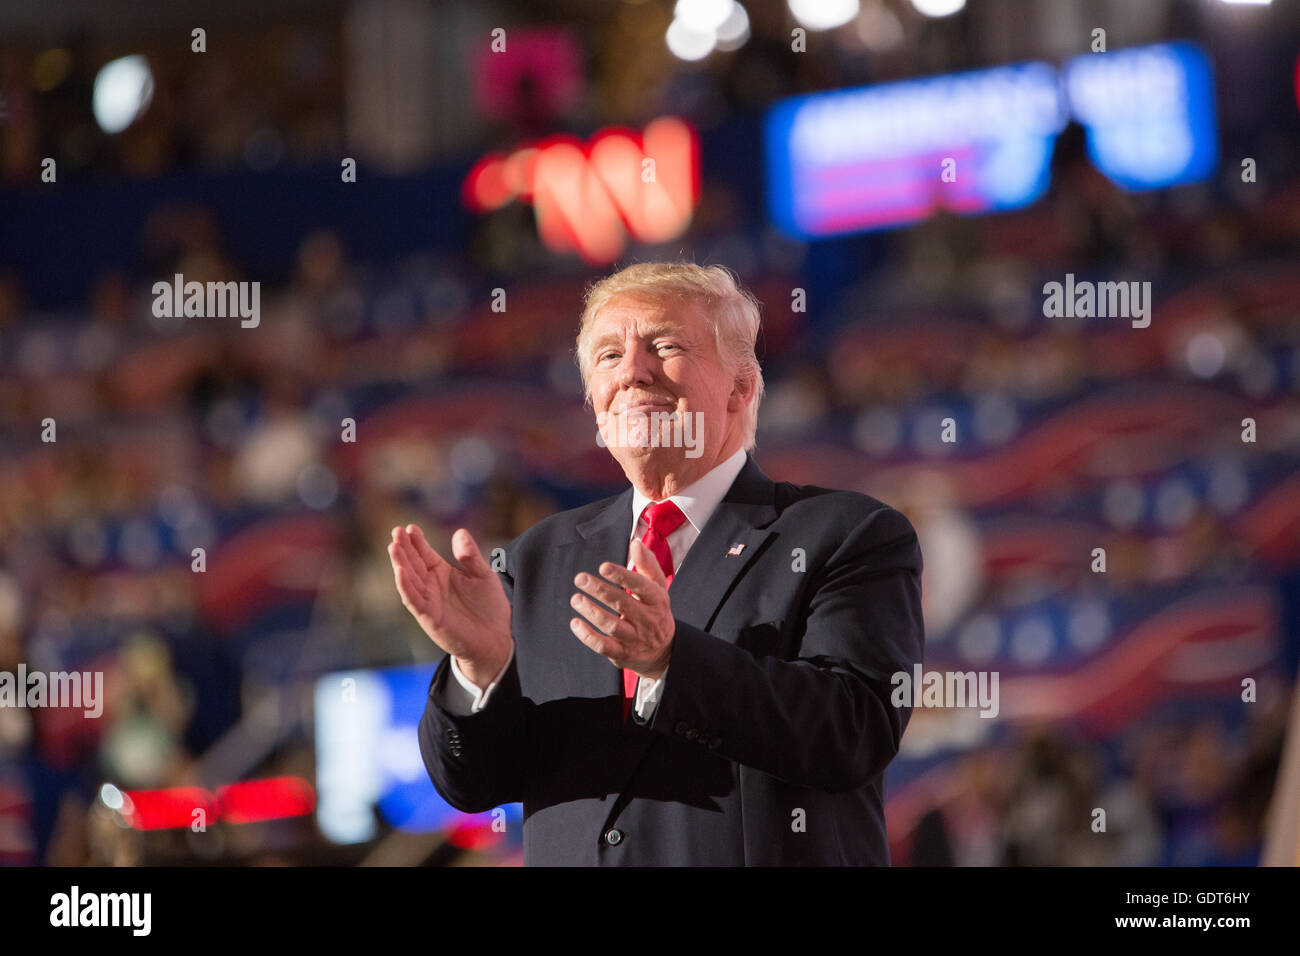 Cleveland, Ohio, EE.UU.; el 21 de julio de 2016: Donald J. Trump acepta su candidatura para contender por la presidencia en la Convención Nacional Republicana. (Philip Scalia/Alamy Live News) Foto de stock